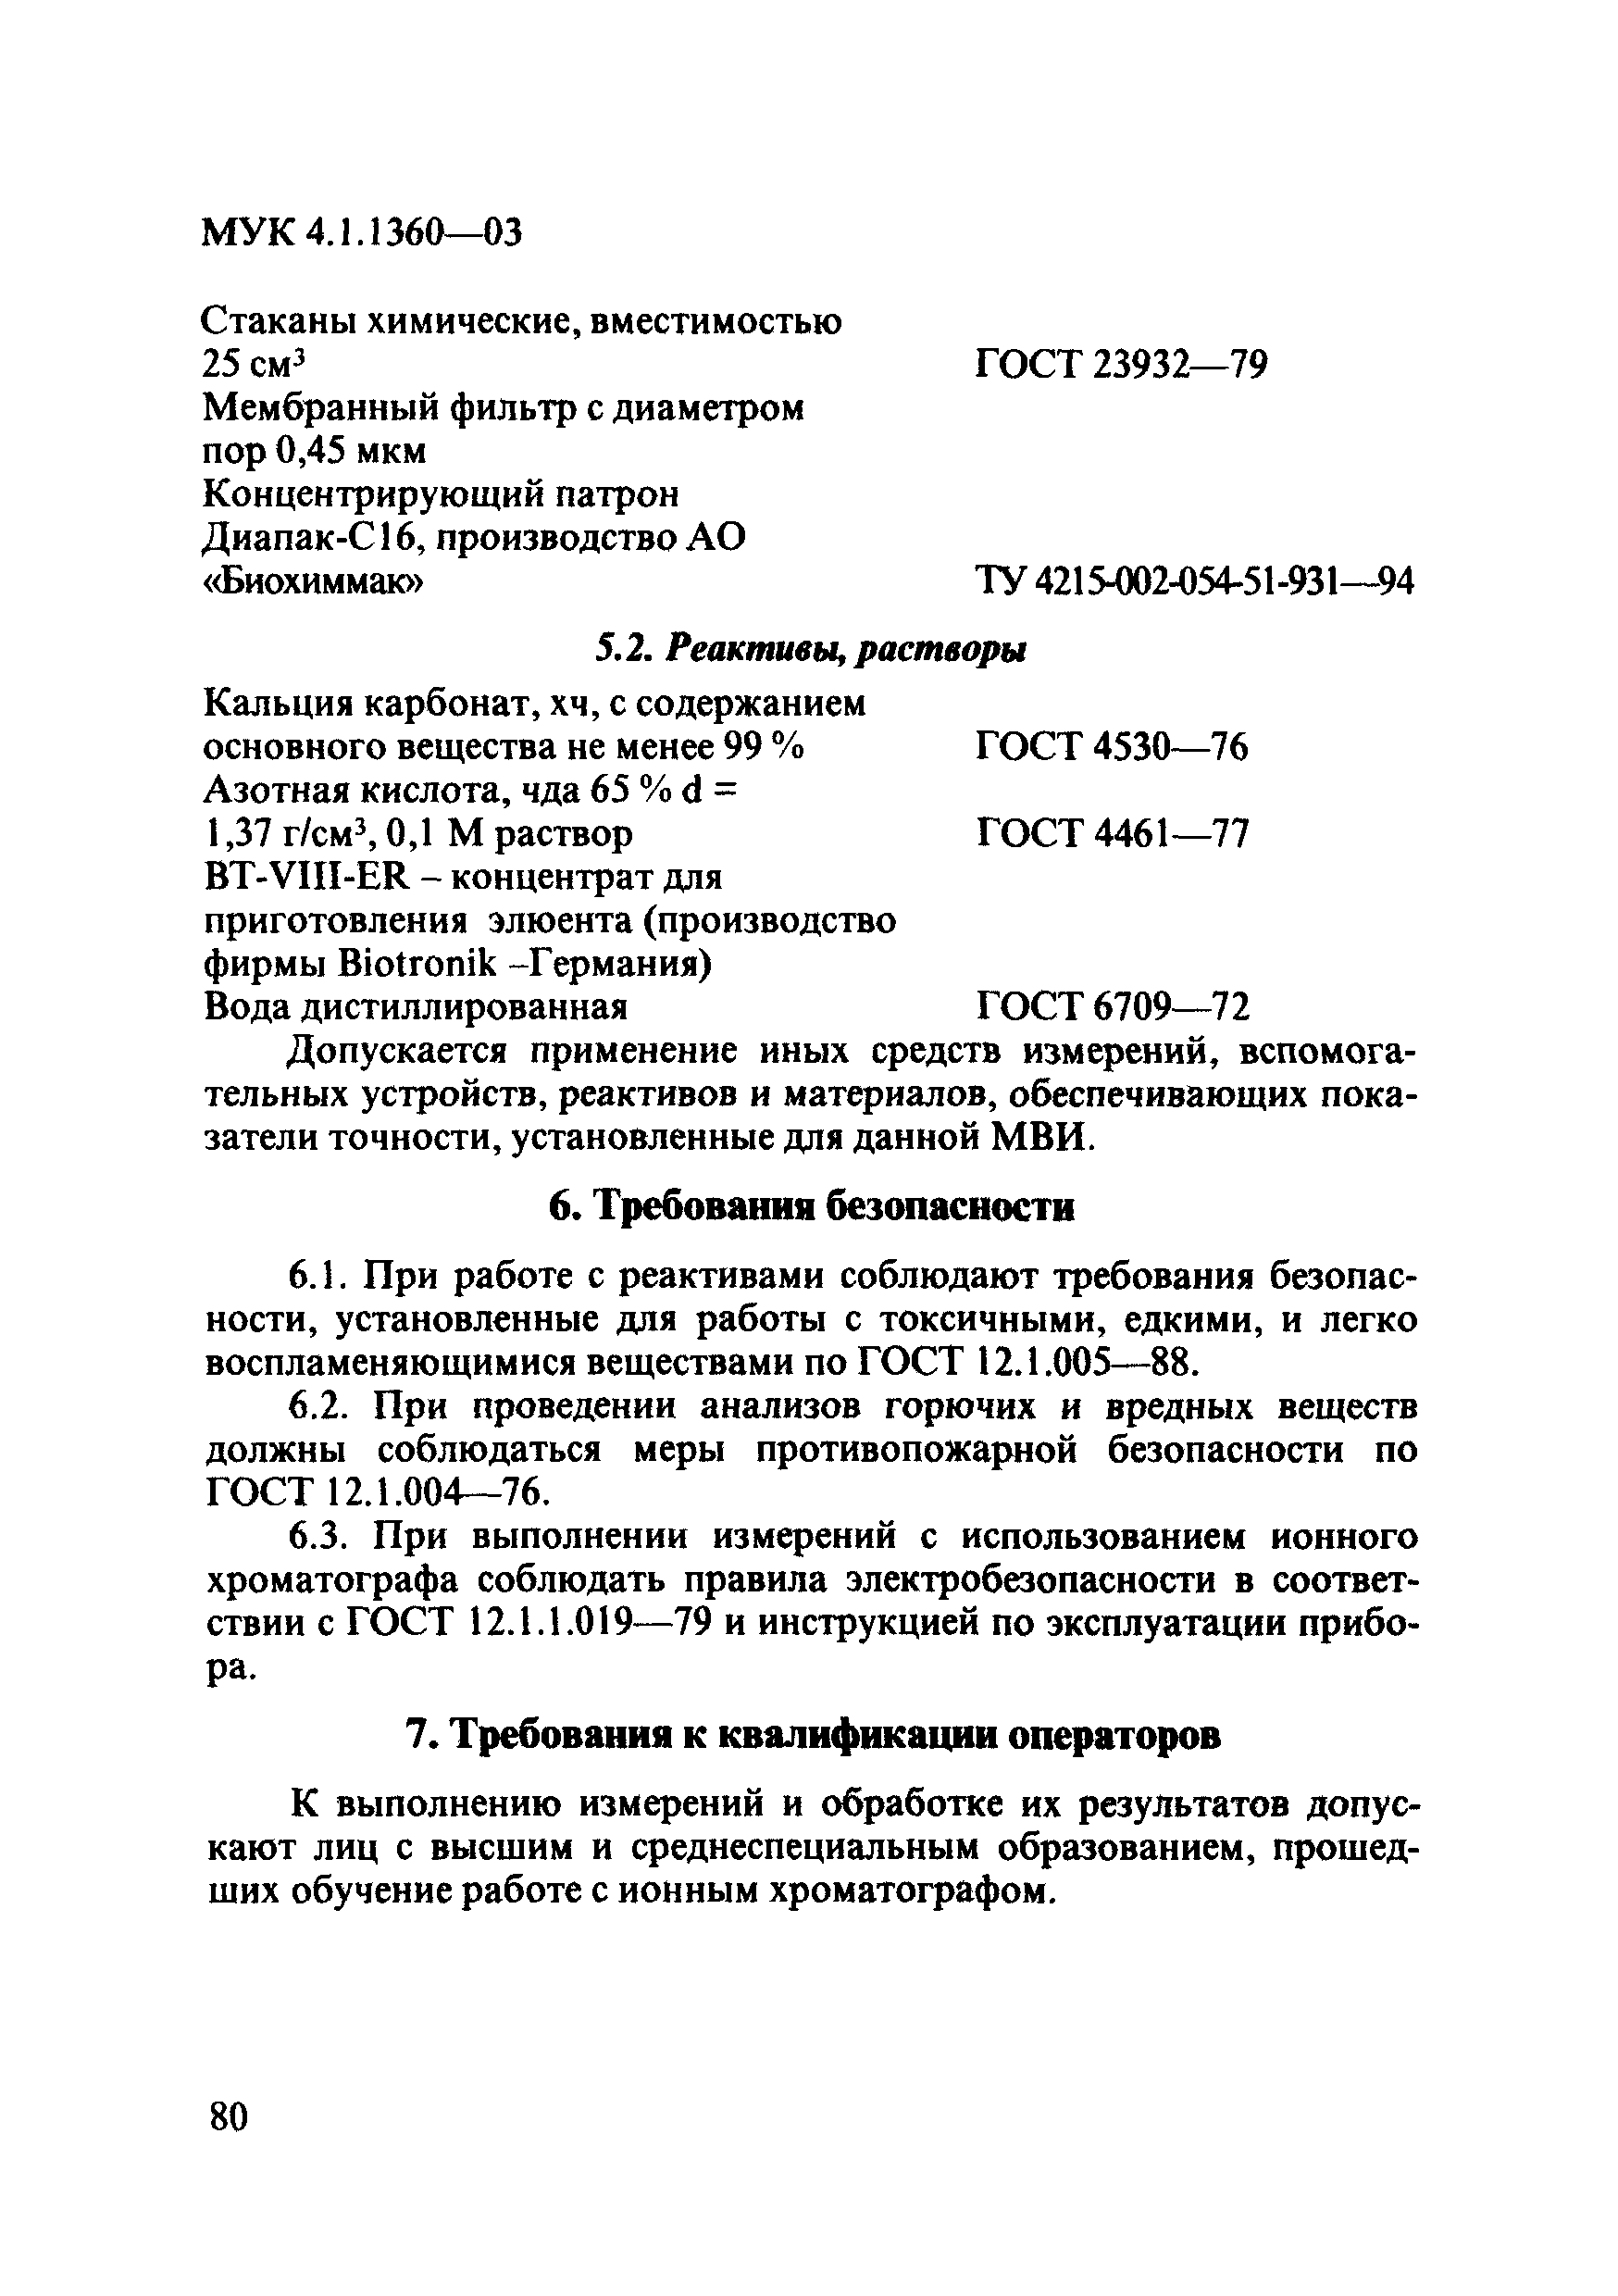 МУК 4.1.1360-03